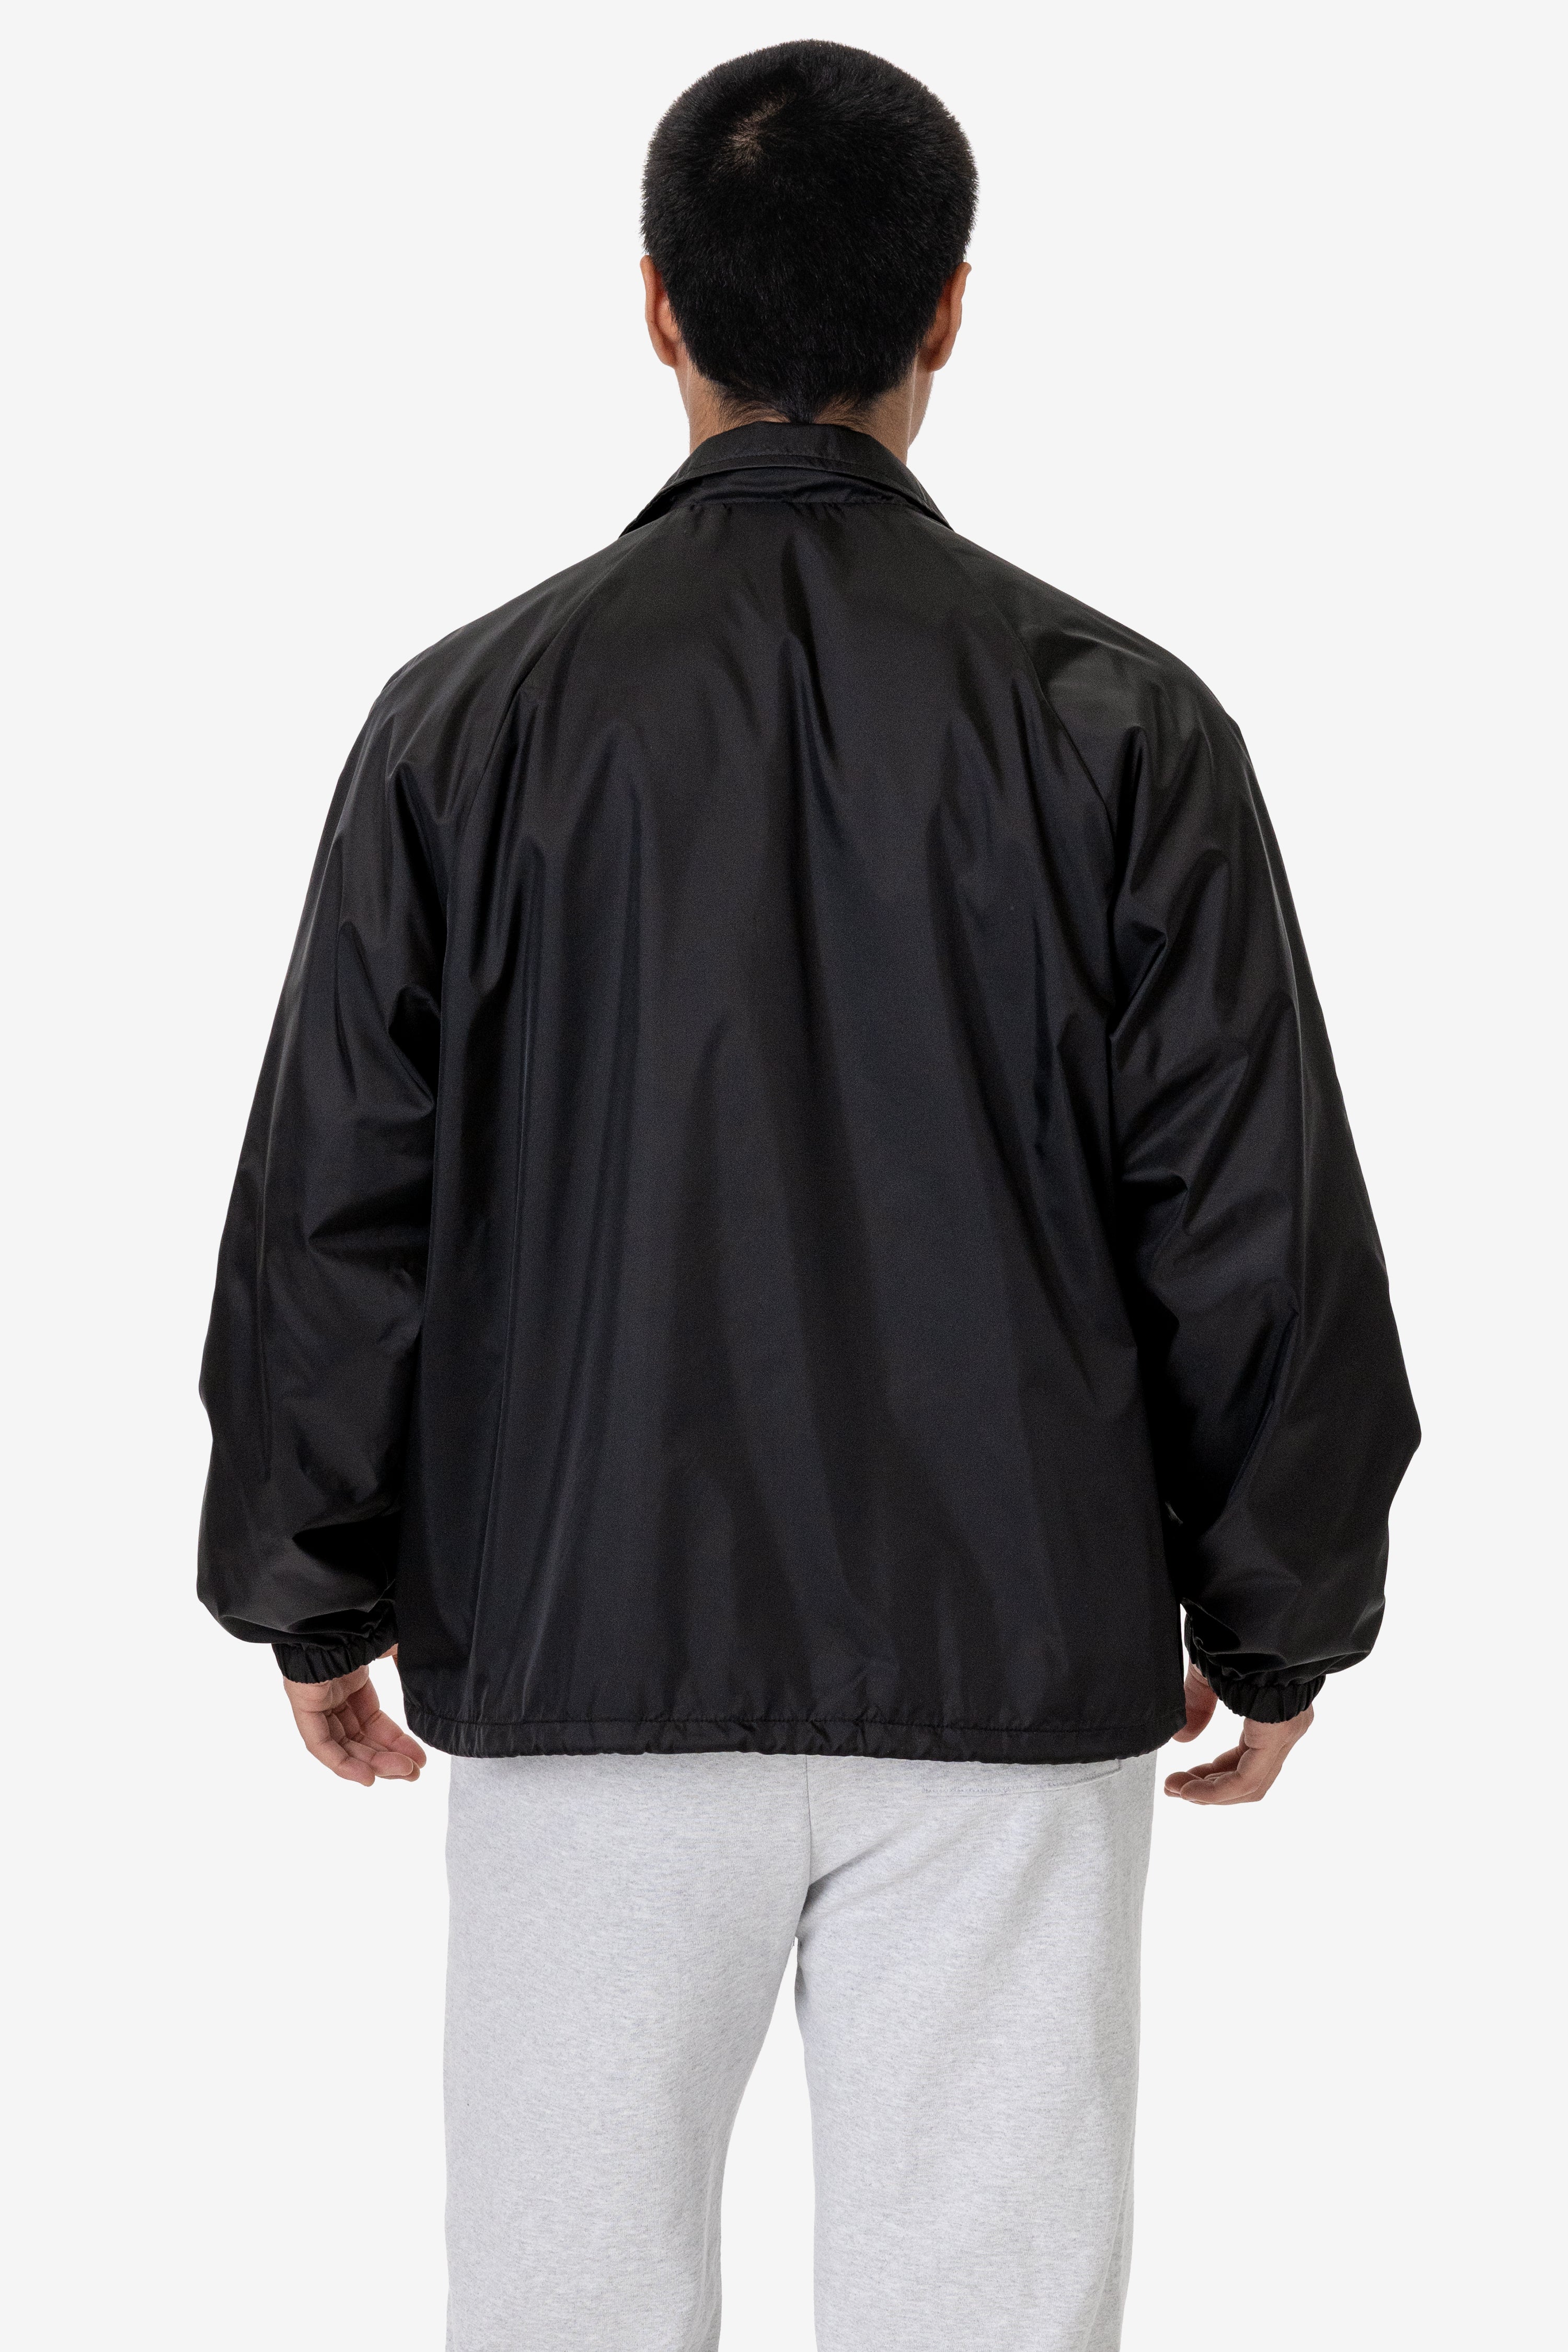 Custom Beimar - Unisex Nylon Coaches Jacket - DTLA Print